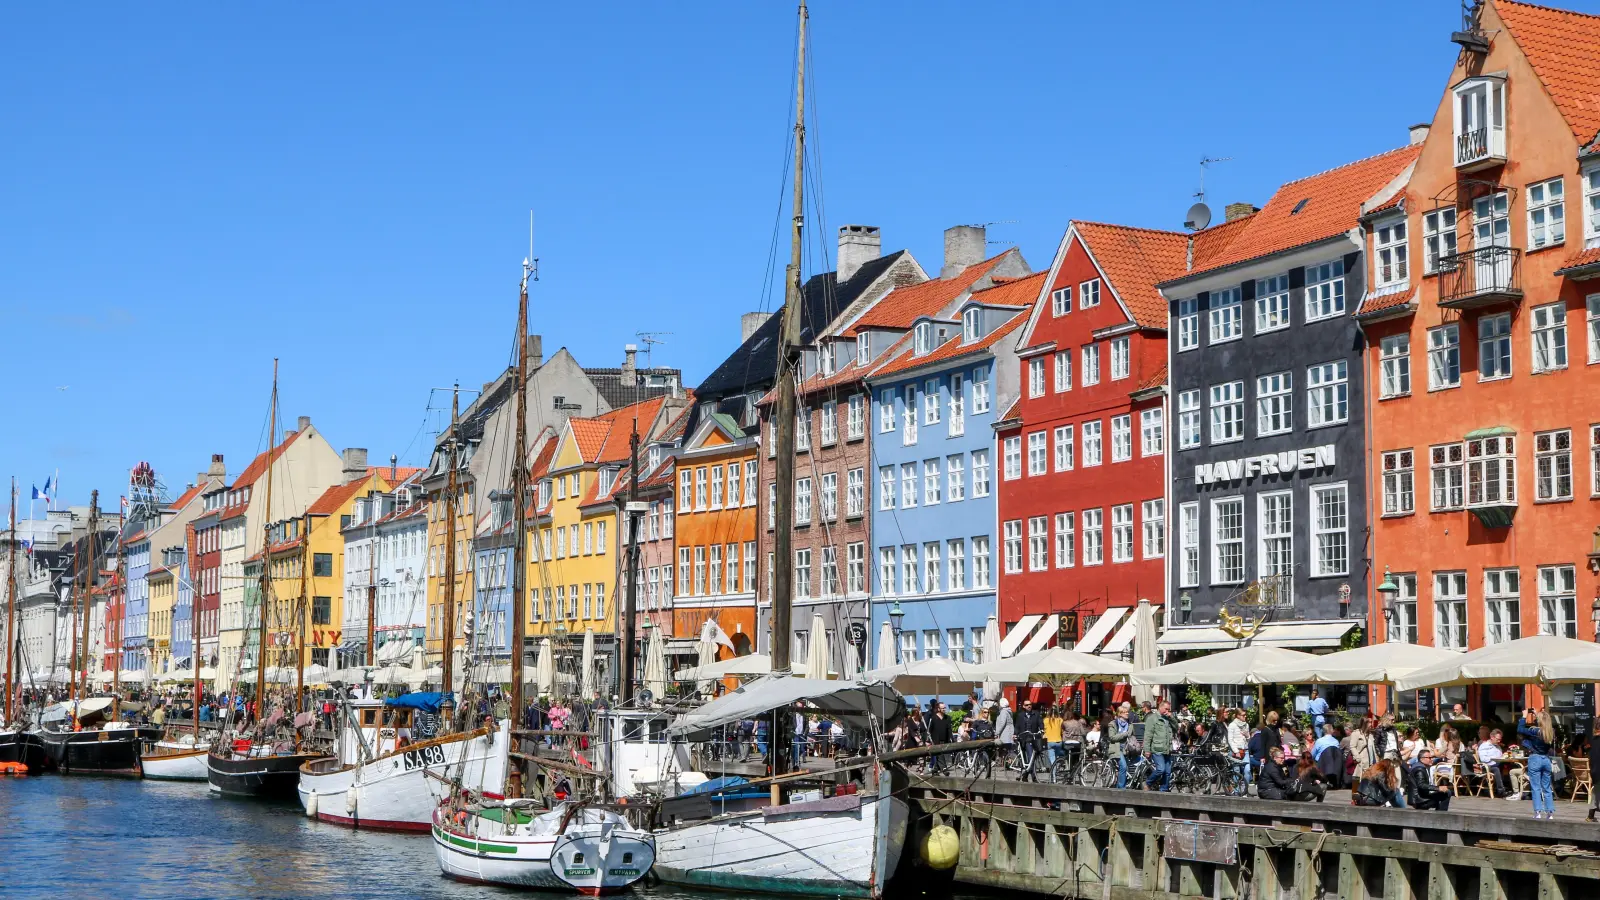 Der Nyhavn in Kopenhagen ist eine der wichtigsten Sehenswürdigkeiten der Stadt. Um eine wegen Corona abgesagte Dänemarkreise ging es vor dem Amtsgericht Ansbach. (Foto: pixabay.com/Nicole Pankalla)